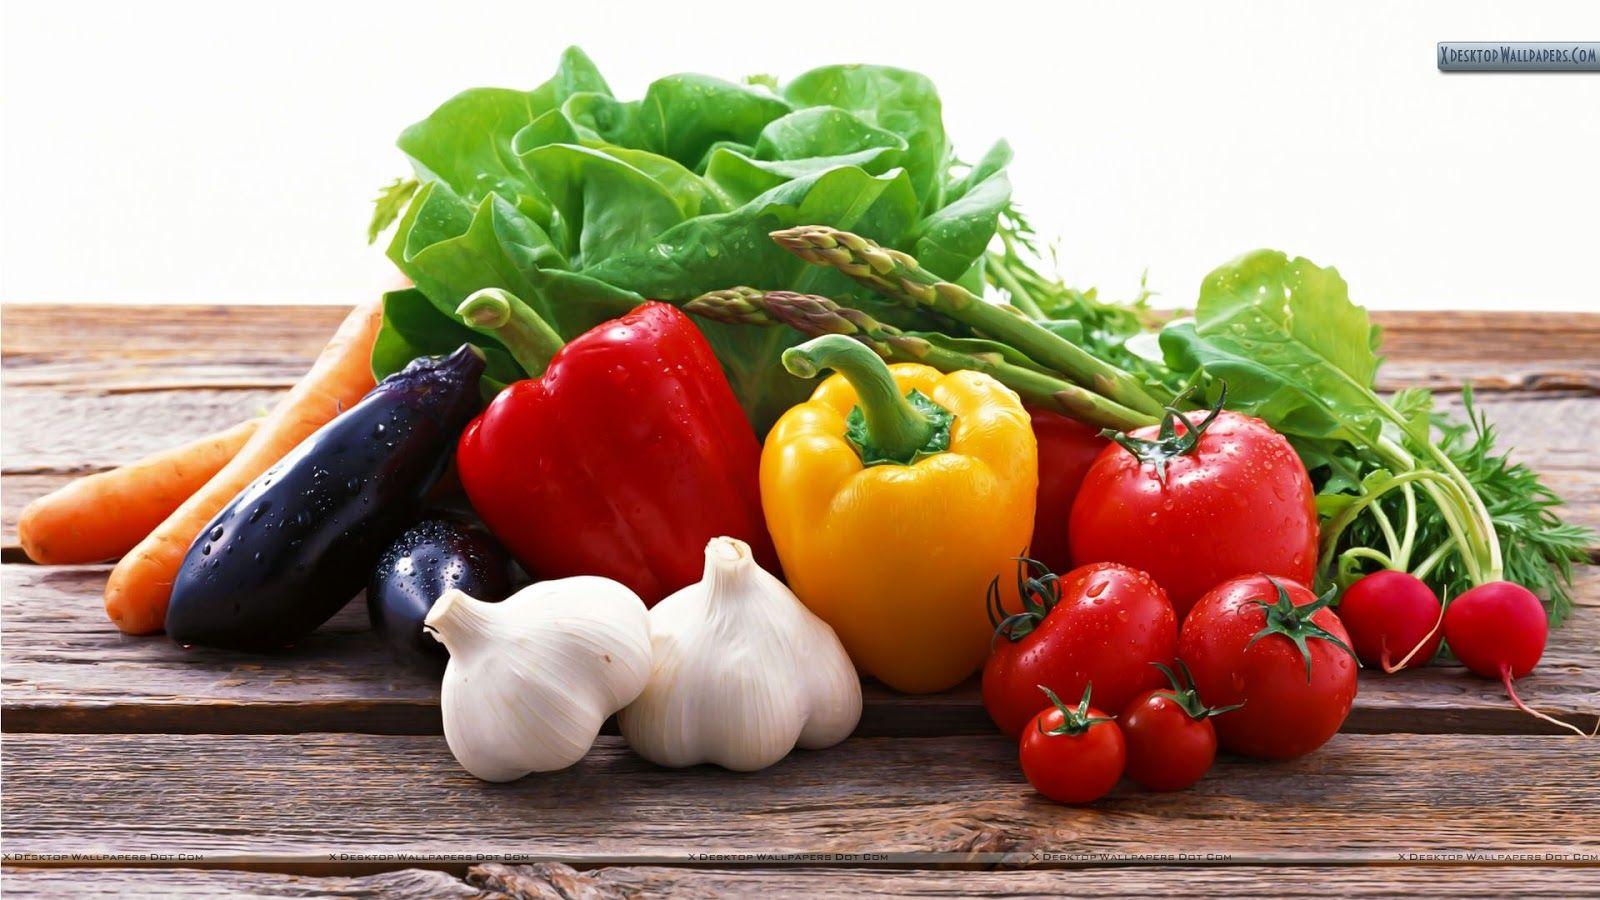 FOOD, RECIPES AND DIET: Mediterranean Meal Plan: Week 2